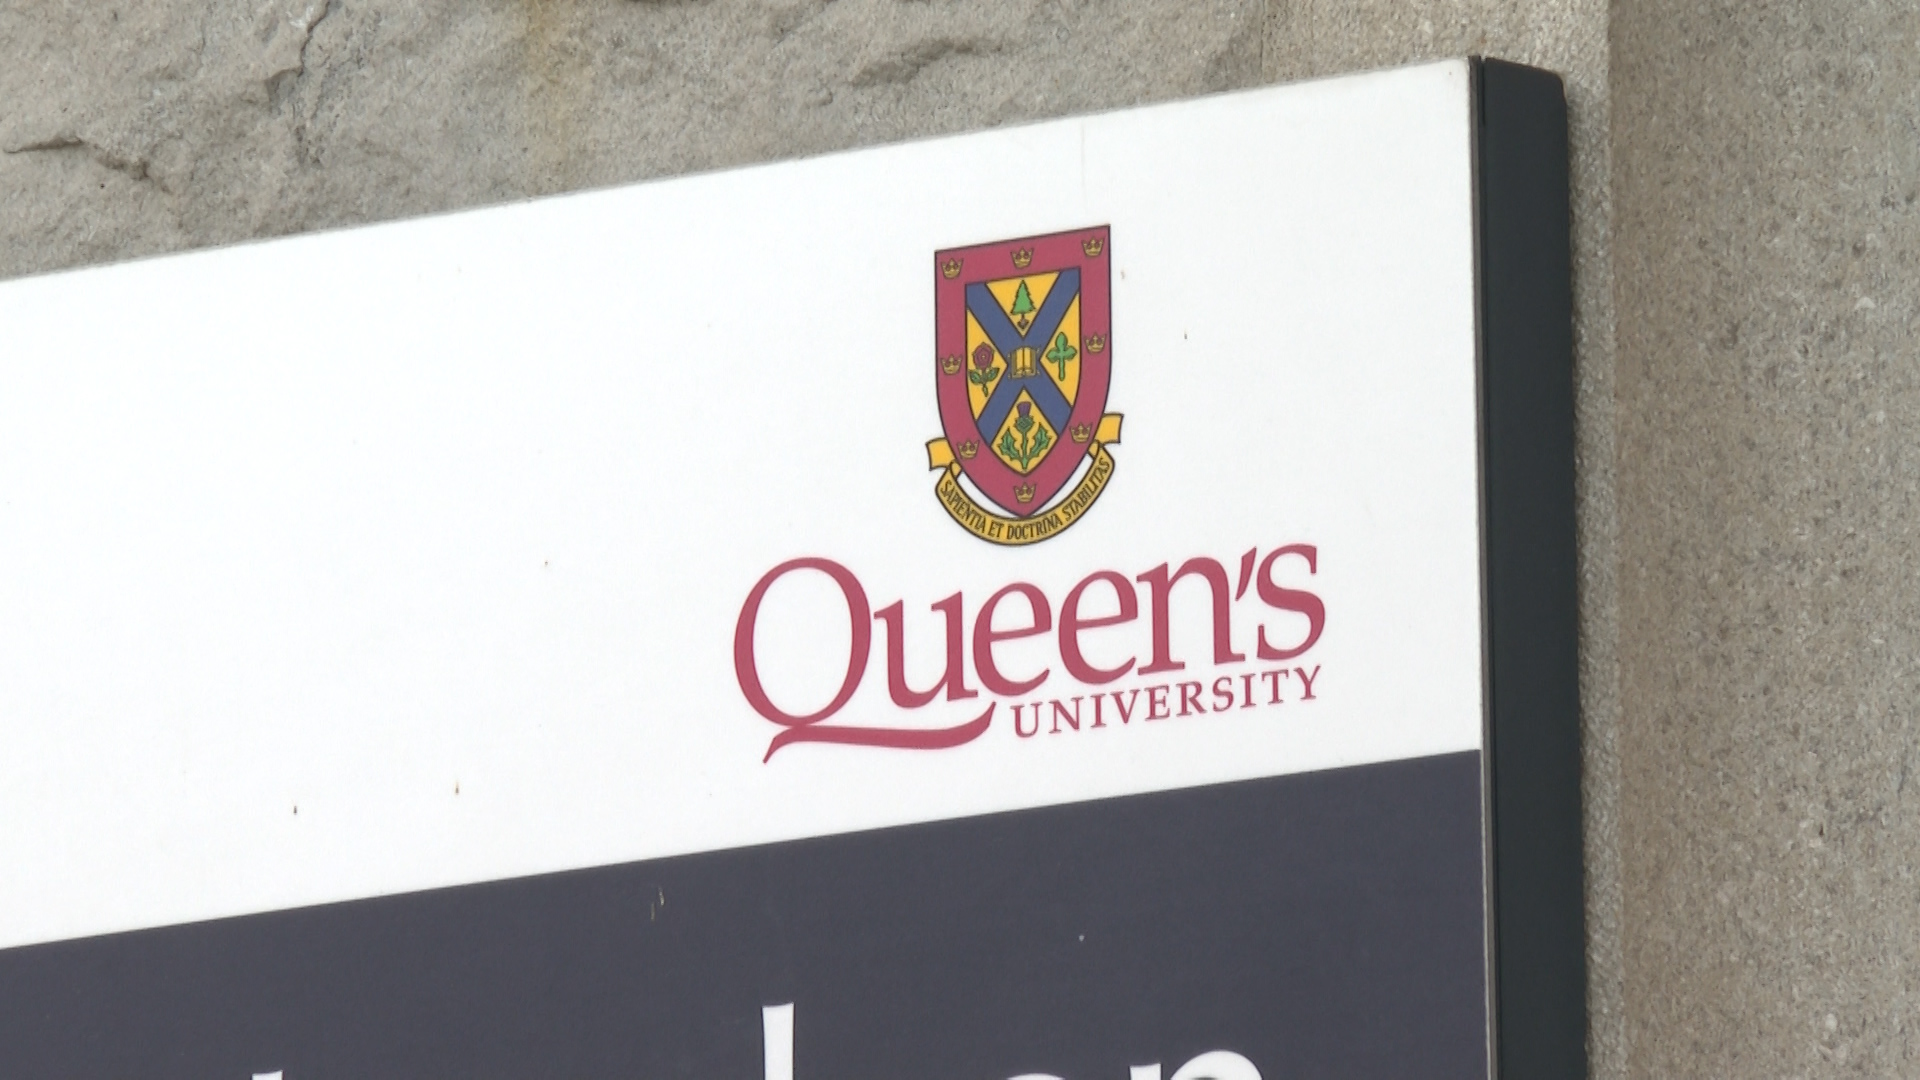 Emergency notification heard in downtown Kingston a planned test by Queen’s University